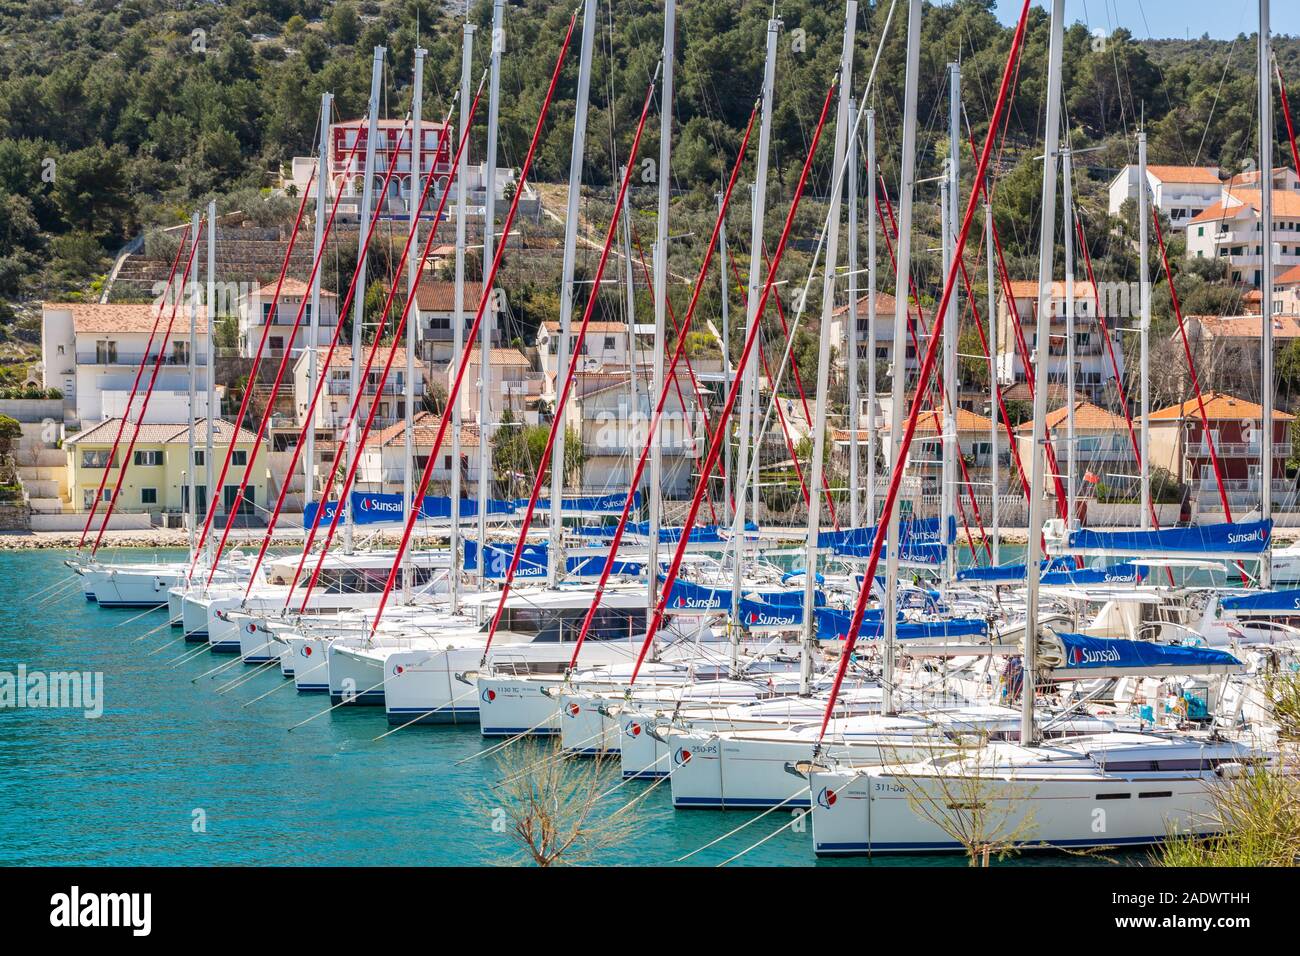 Sun Sail Yachtcharter monohull Segelyachten günstig in einer Marina, Kroatien Stockfoto